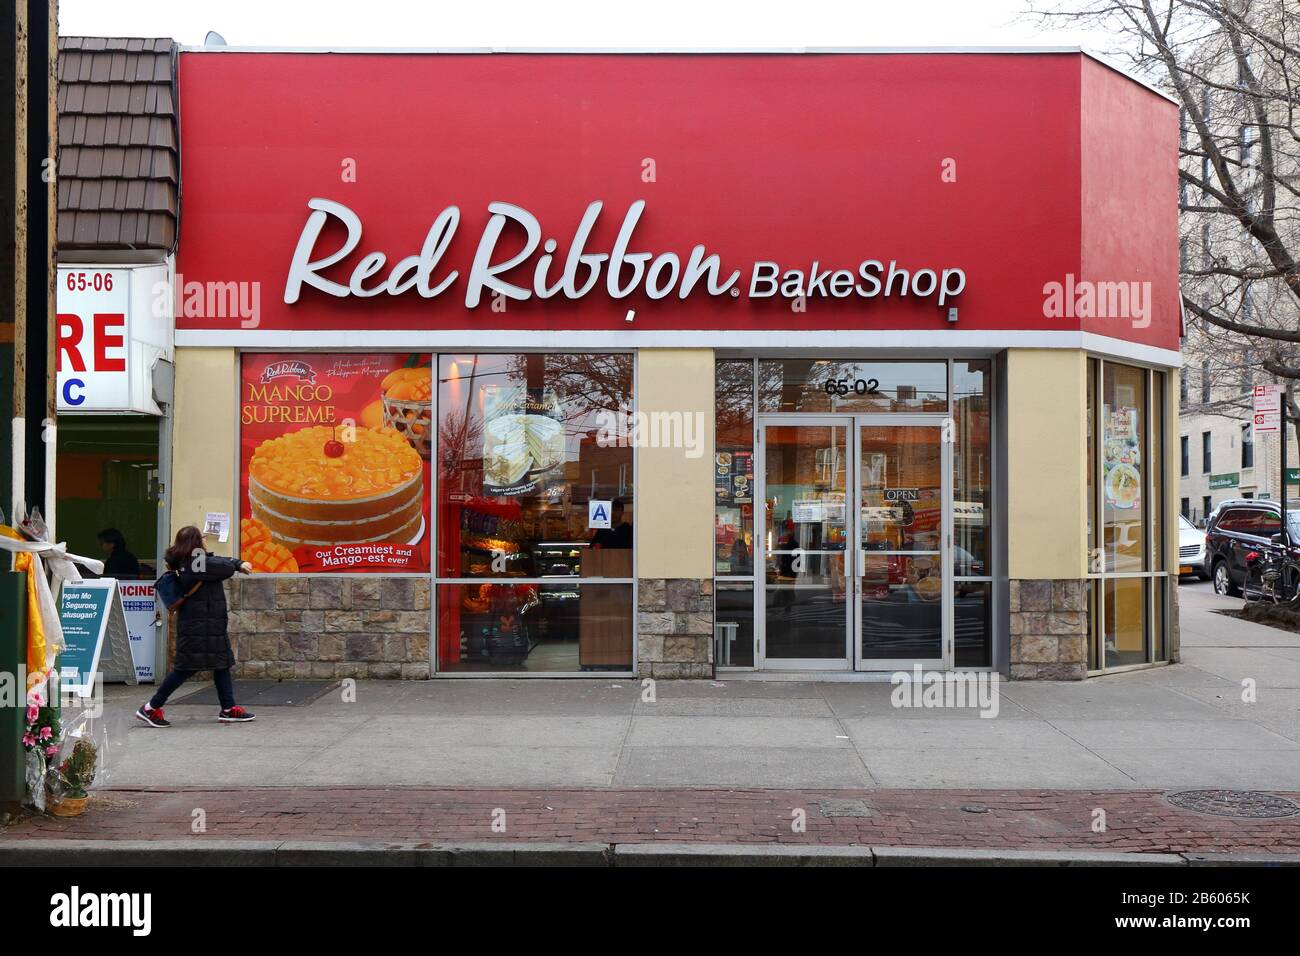 Red Ribbon Bakeshop, 65-02 Roosevelt Ave, Queens, New York. New York photo d'une chaîne de boulangerie philippine dans le quartier Woodside. Banque D'Images